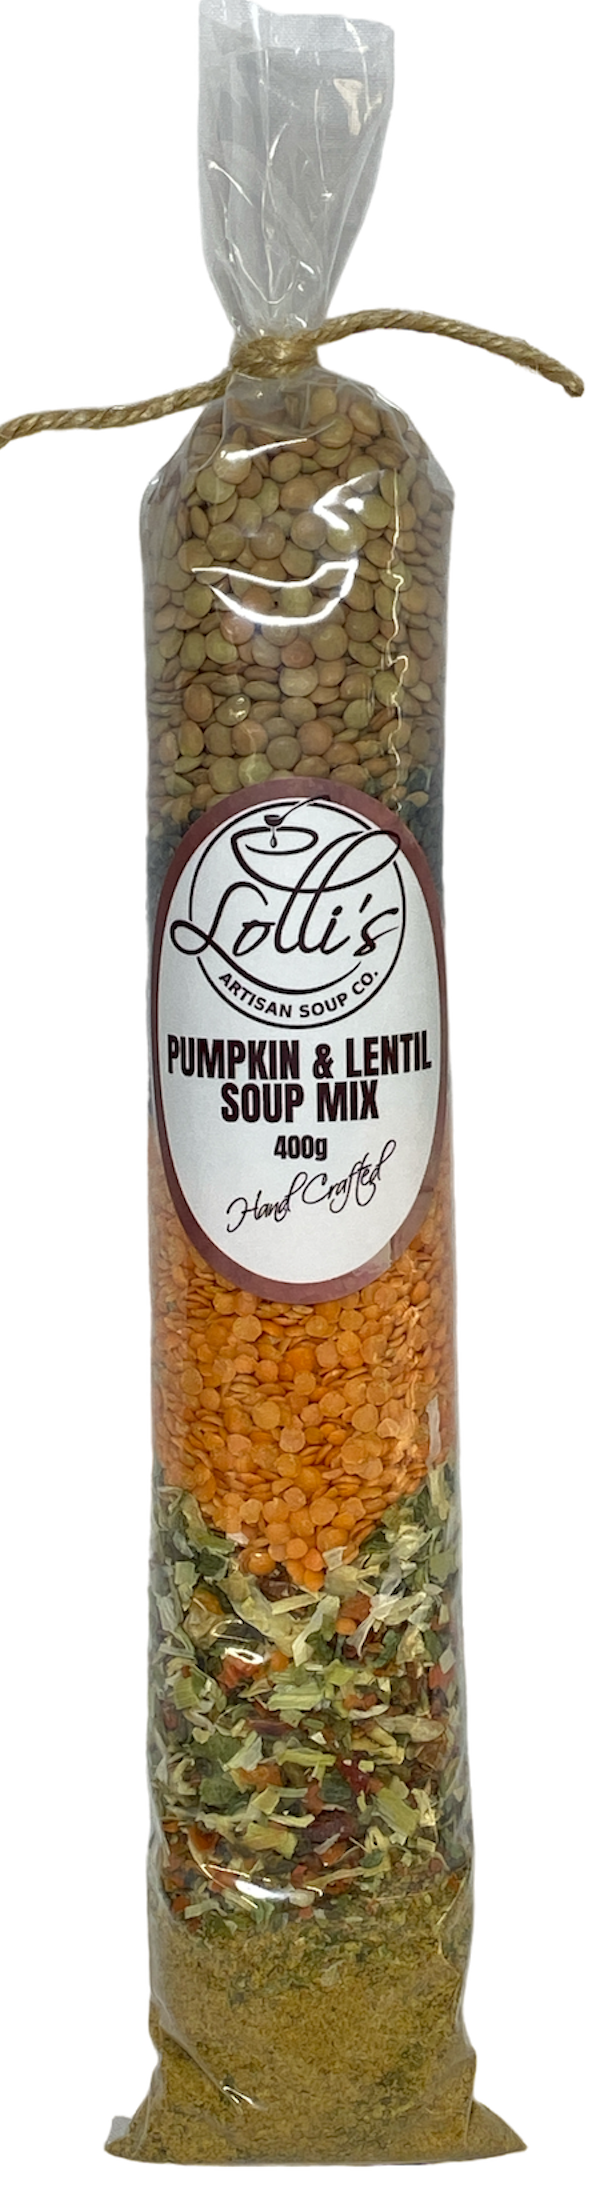 Lolli's Artisan Soups - Various